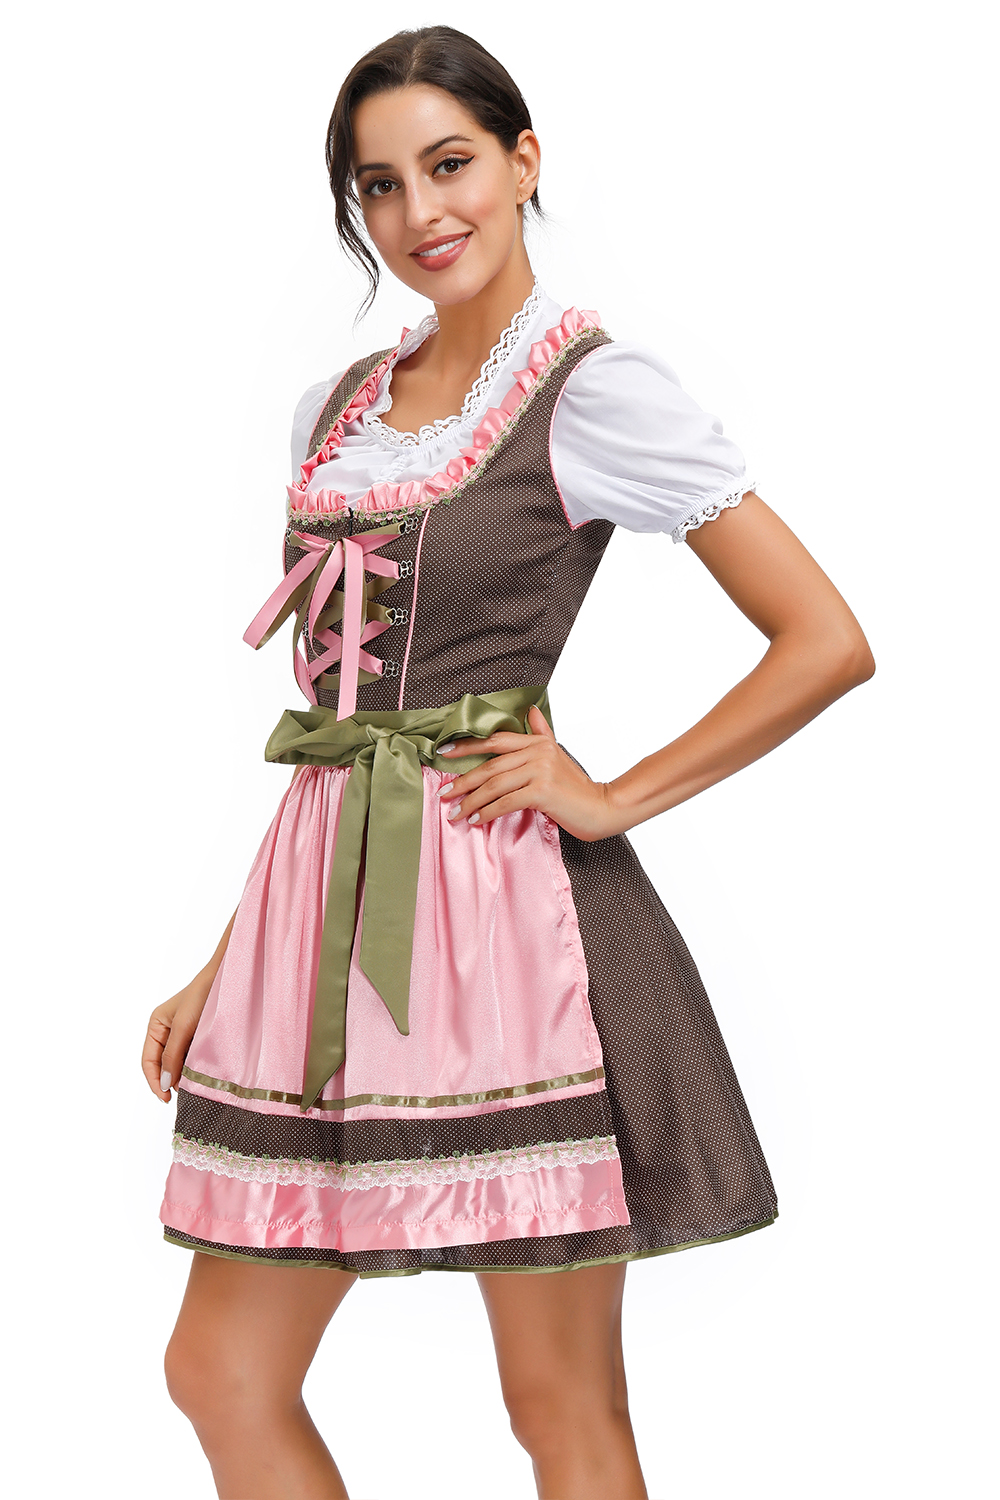 Plus Size Womens German Dirndl Dress Oktoberfest Costumes